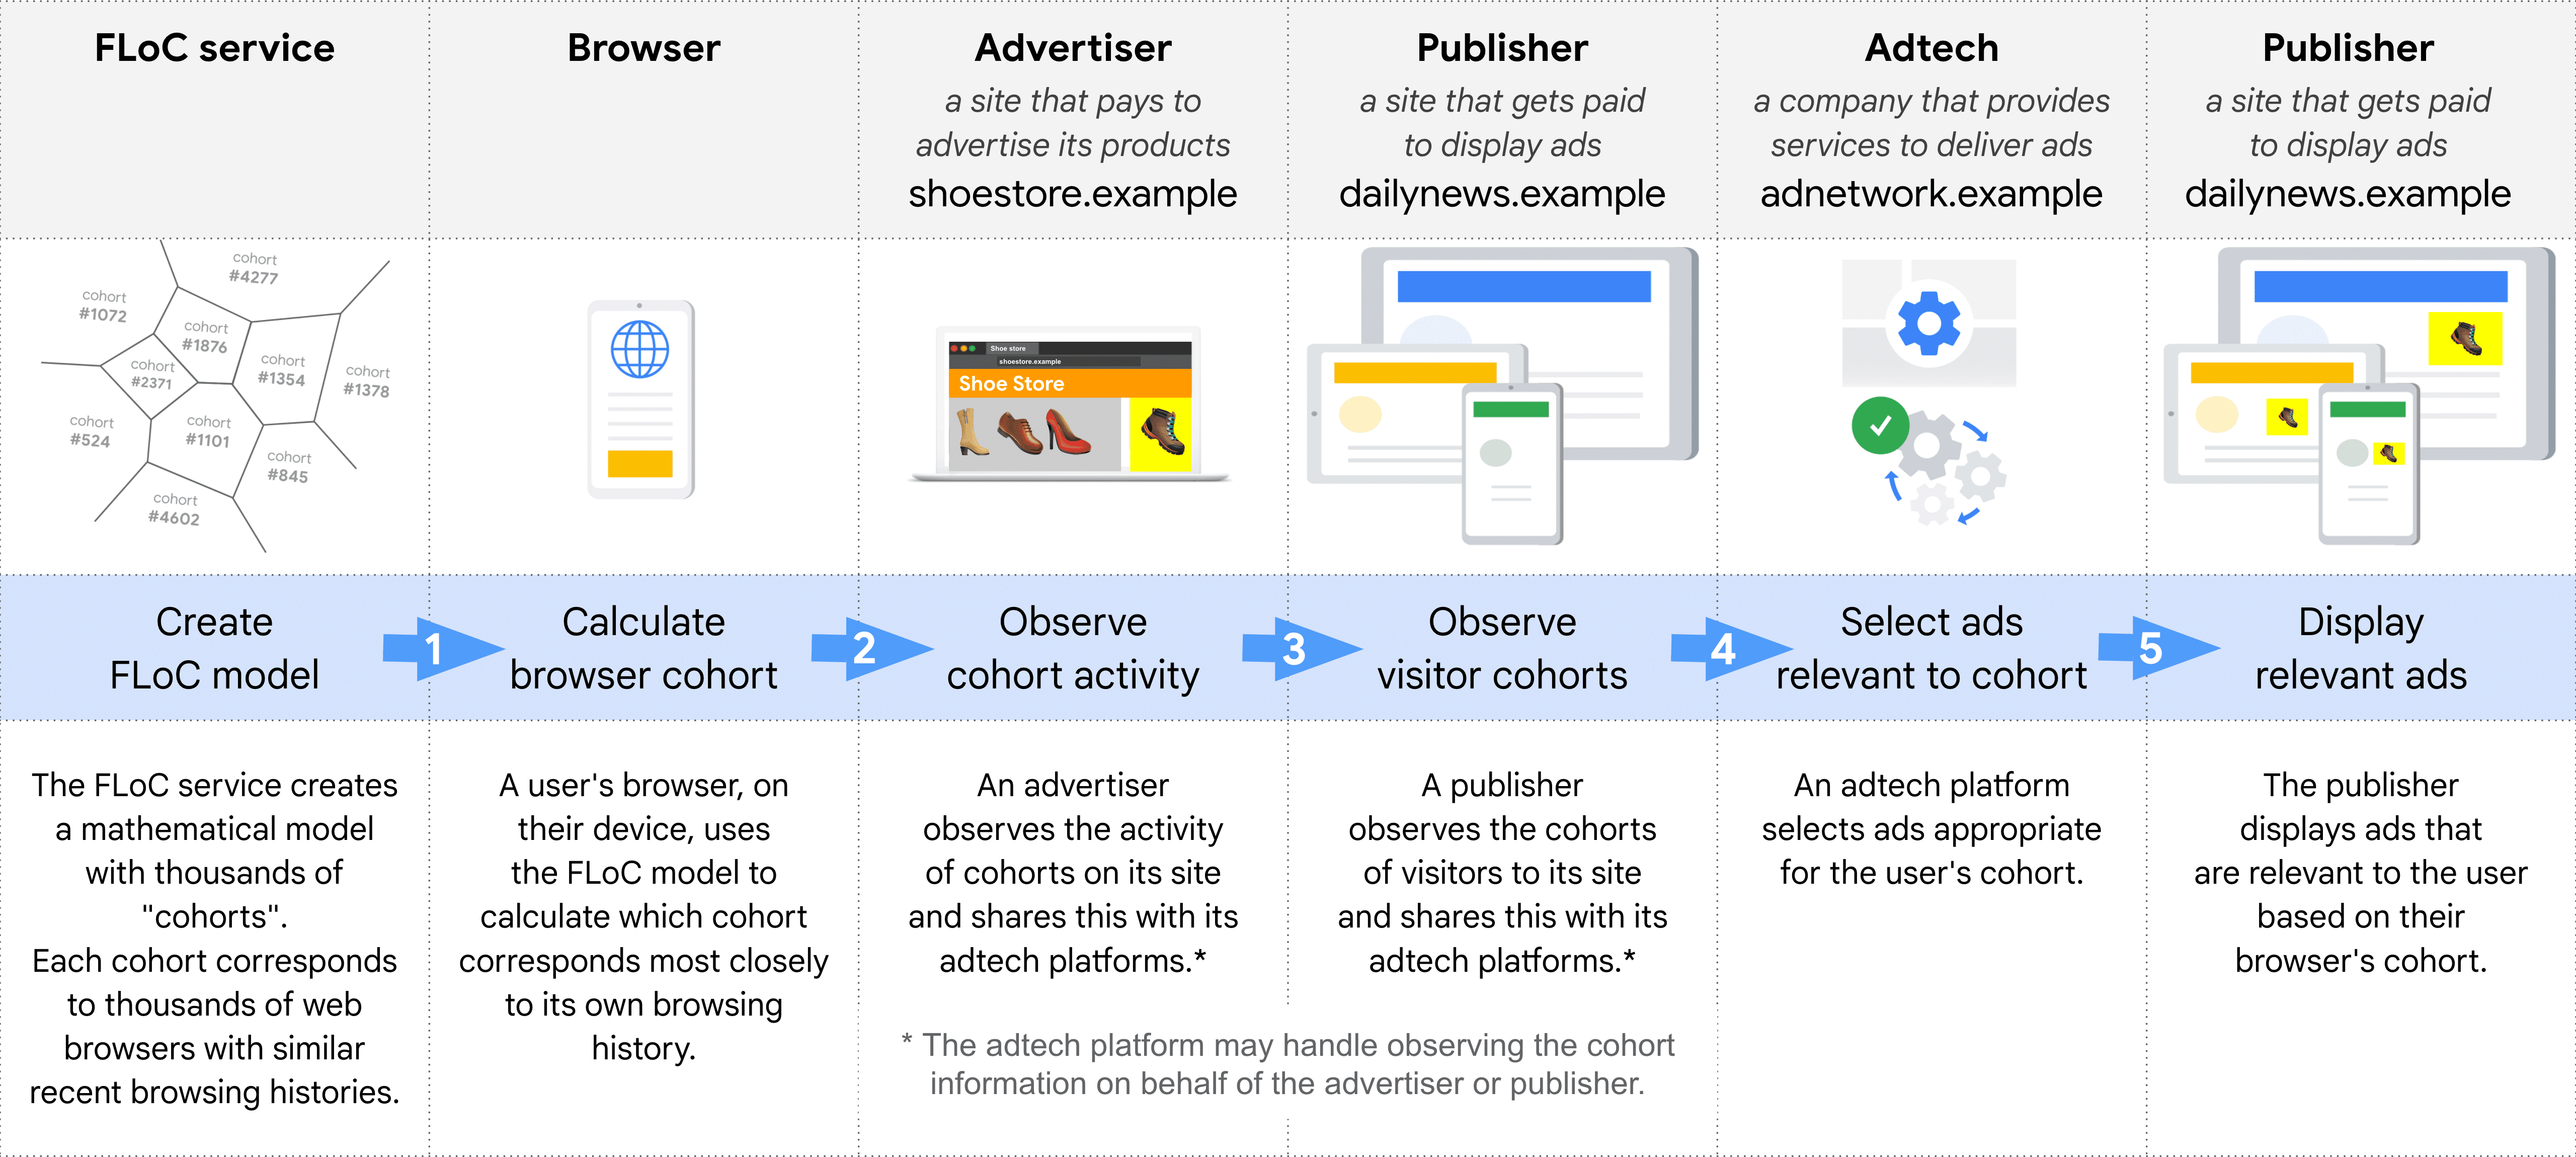 Schemat pokazujący krok po kroku różne role w wybieraniu i wyświetlaniu odpowiedniej reklamy za pomocą FLoC: usługa FLoC, przeglądarka, reklamodawcy, wydawca (aby obserwować kohorty), technologia reklamowa i wydawca (do wyświetlania reklam).